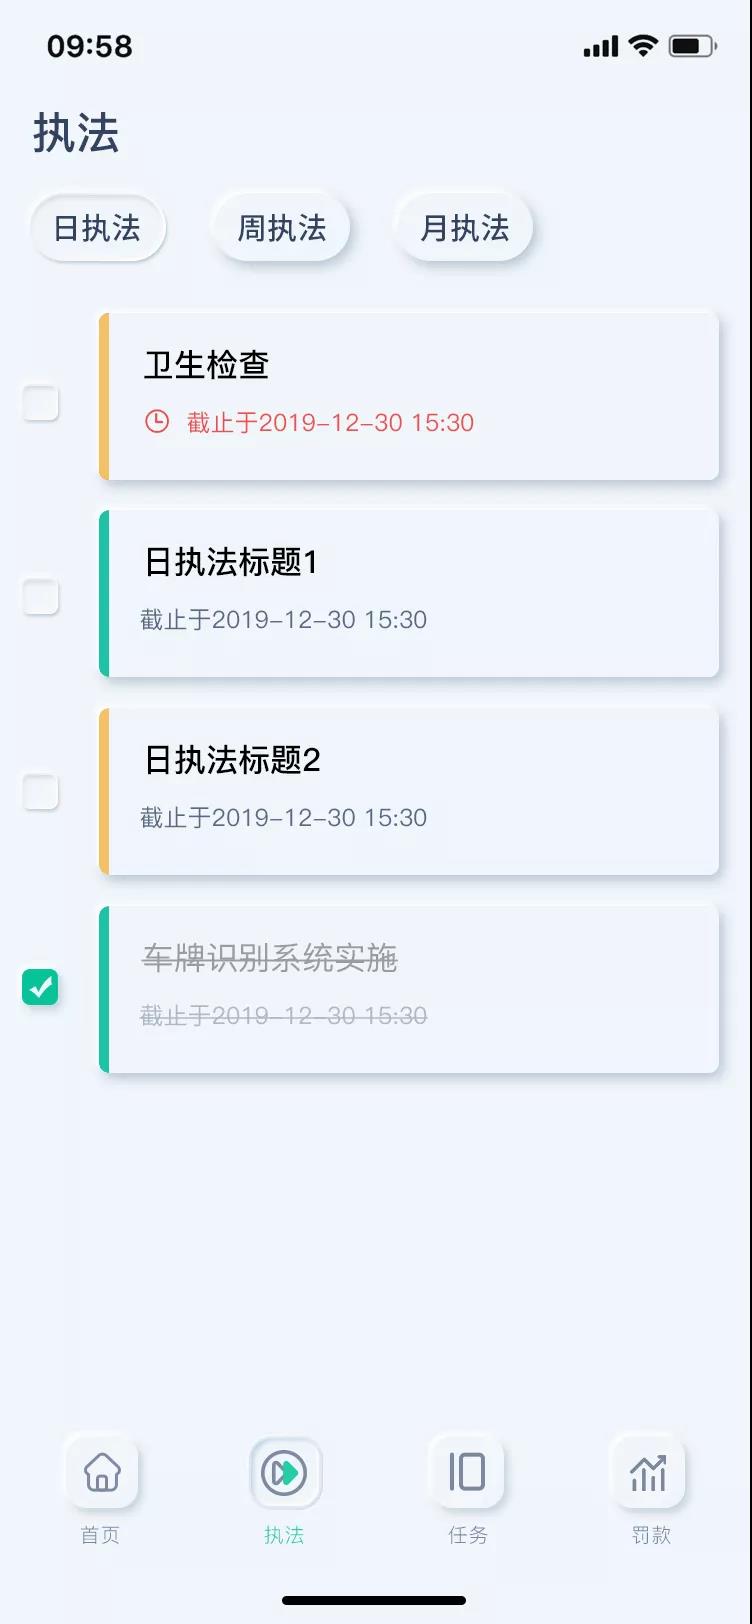 UI设计师李胜楠浅析智慧工厂工业互联网中的任务管理工具